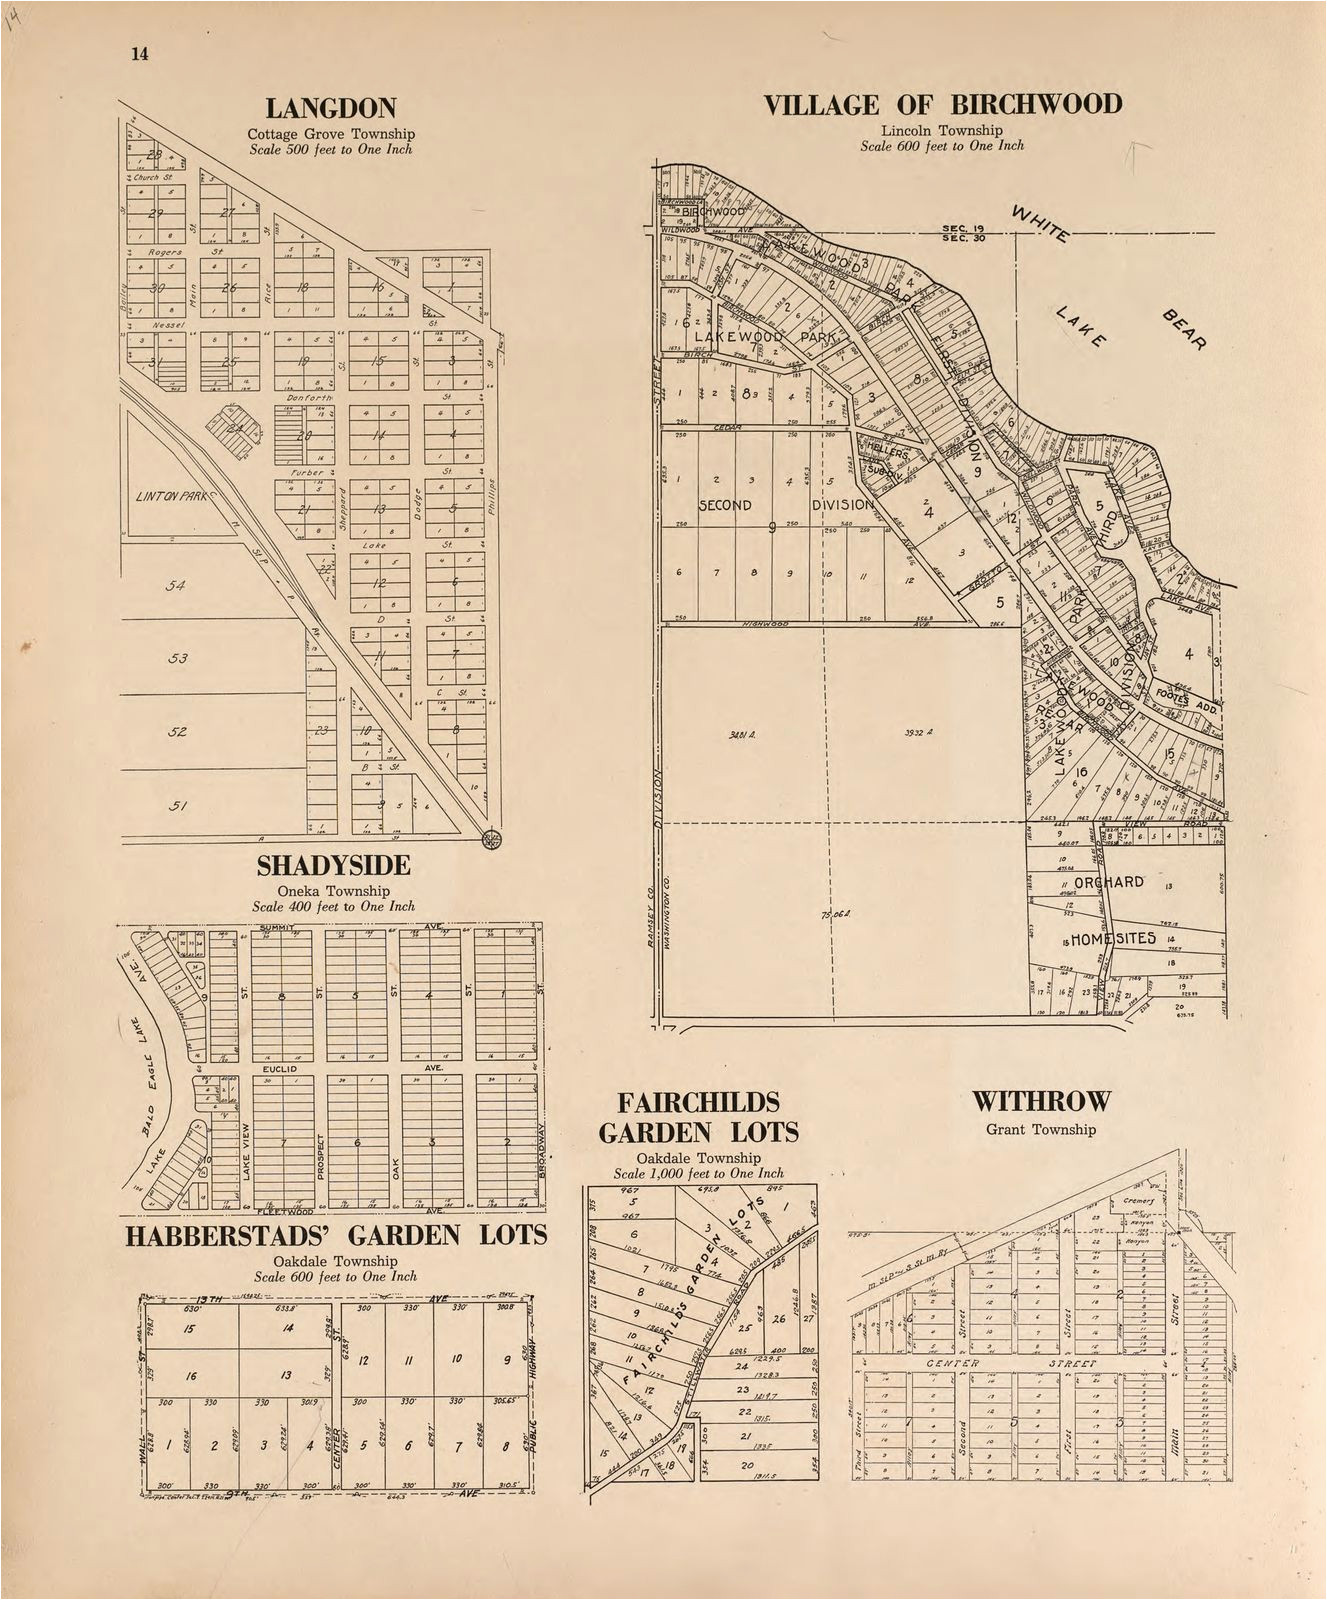 Plat Maps Minnesota Plat Book Of Washington County Minnesota Showing township Plats